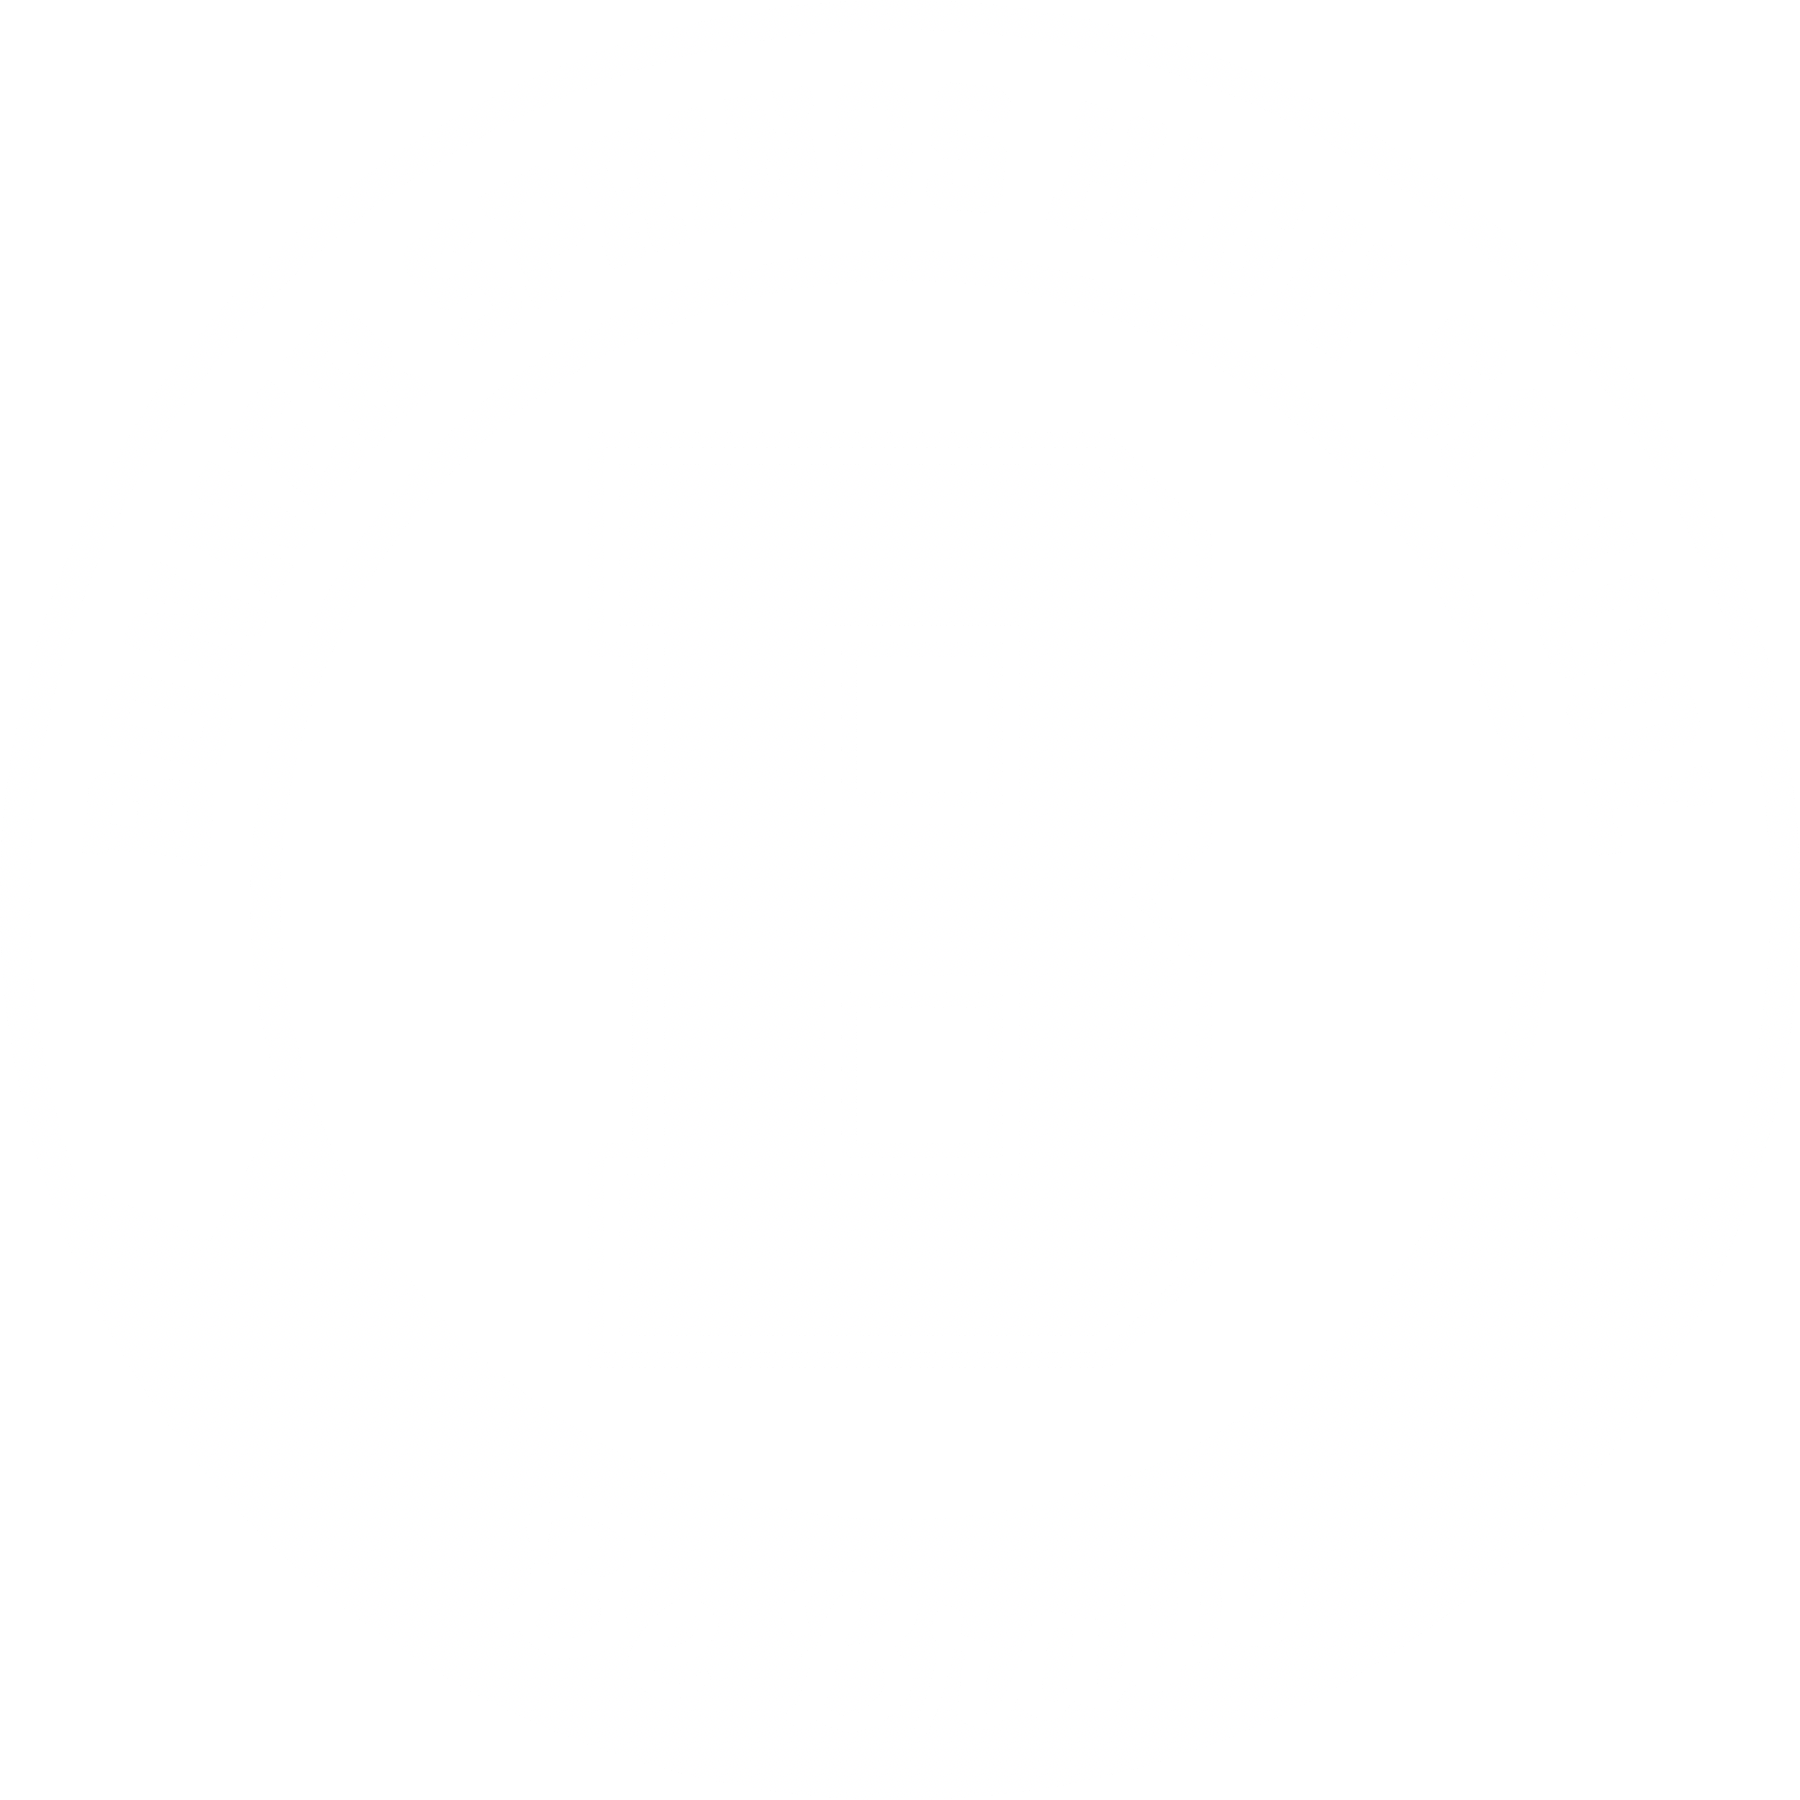 bonner springs high school logo